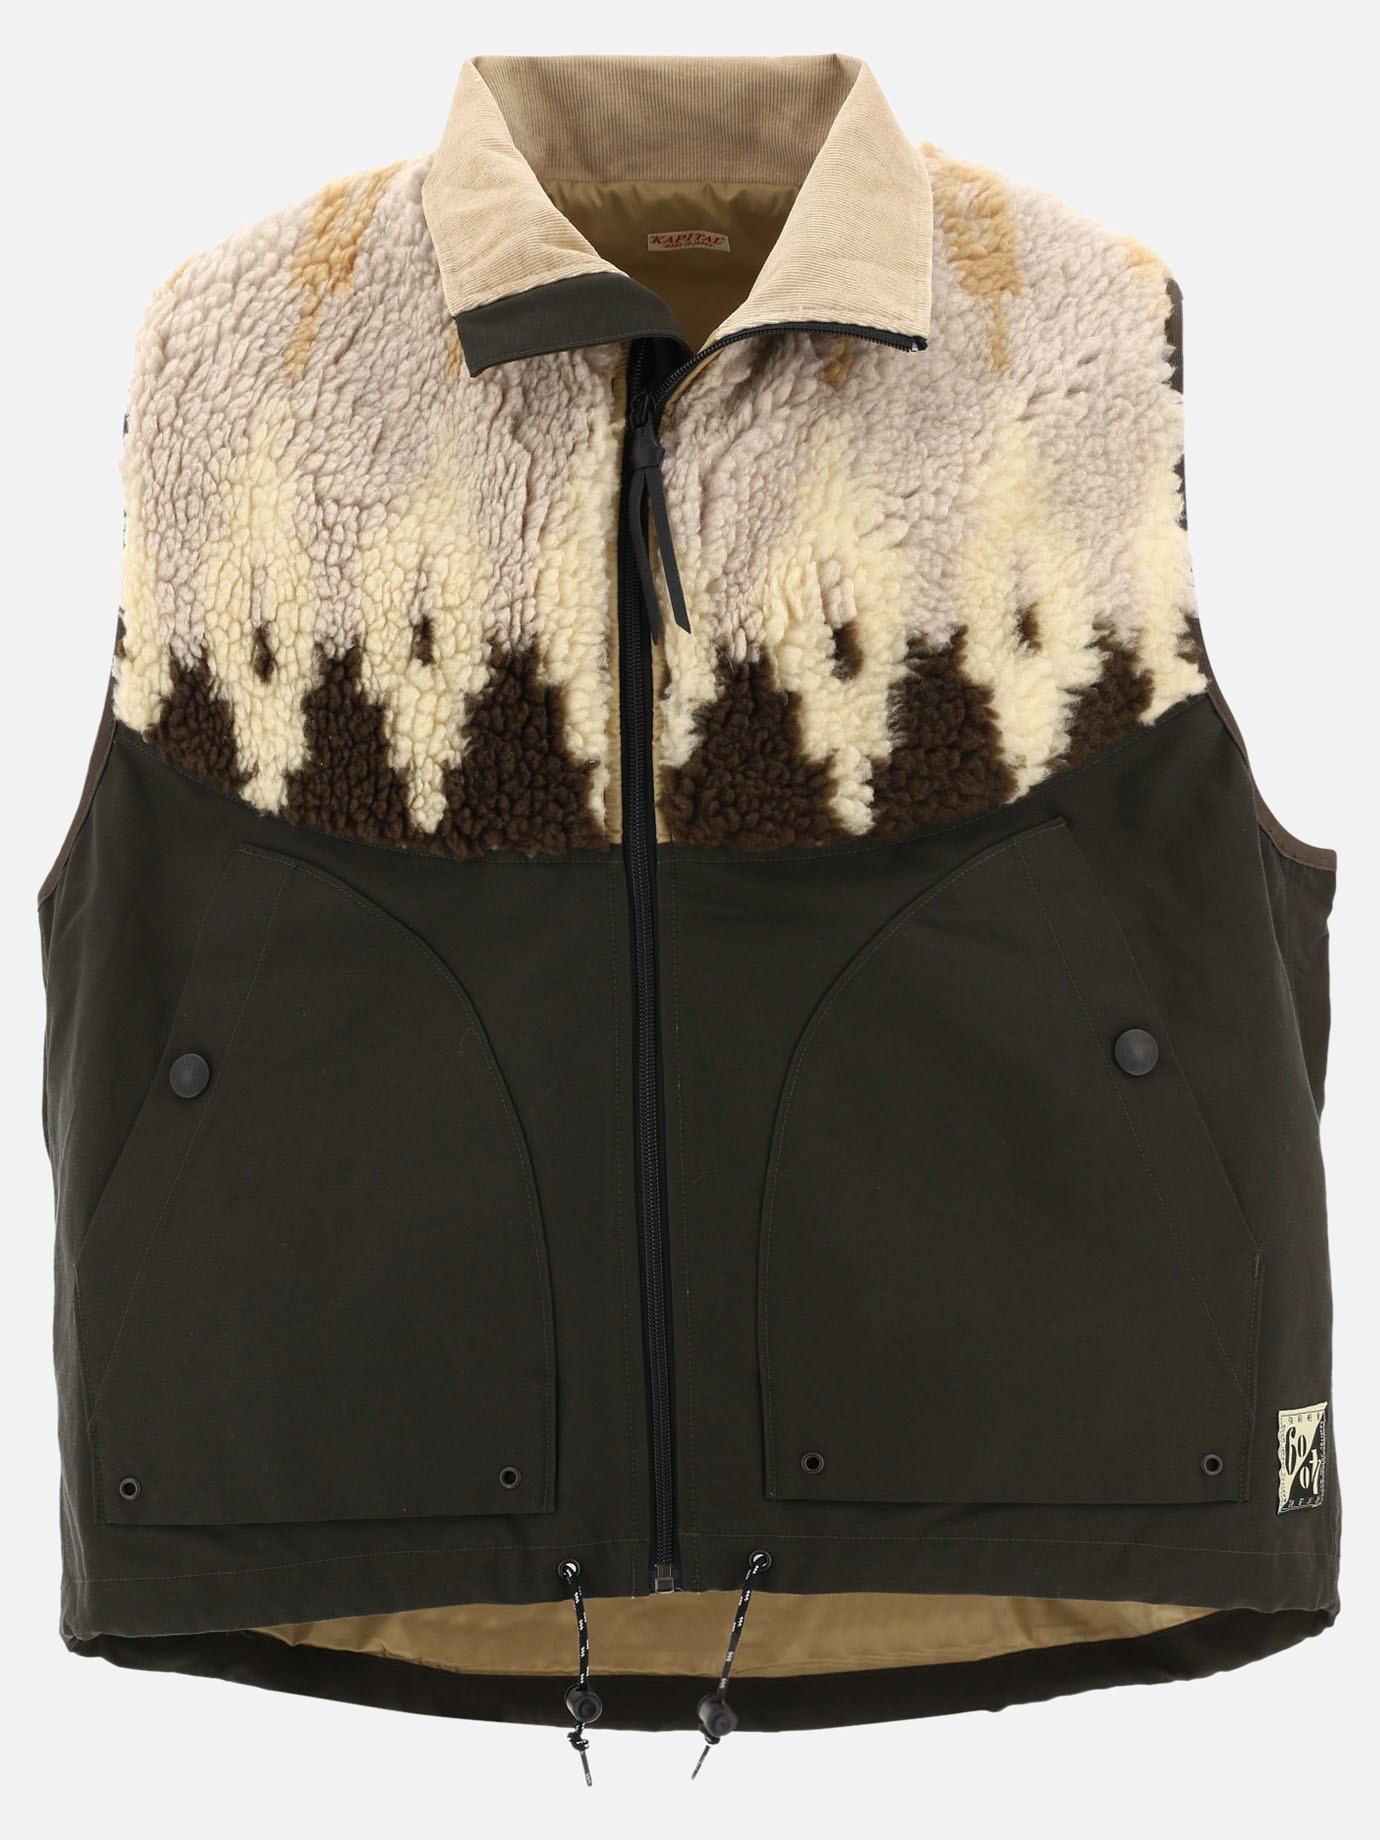 Fleece sleeveless jacket